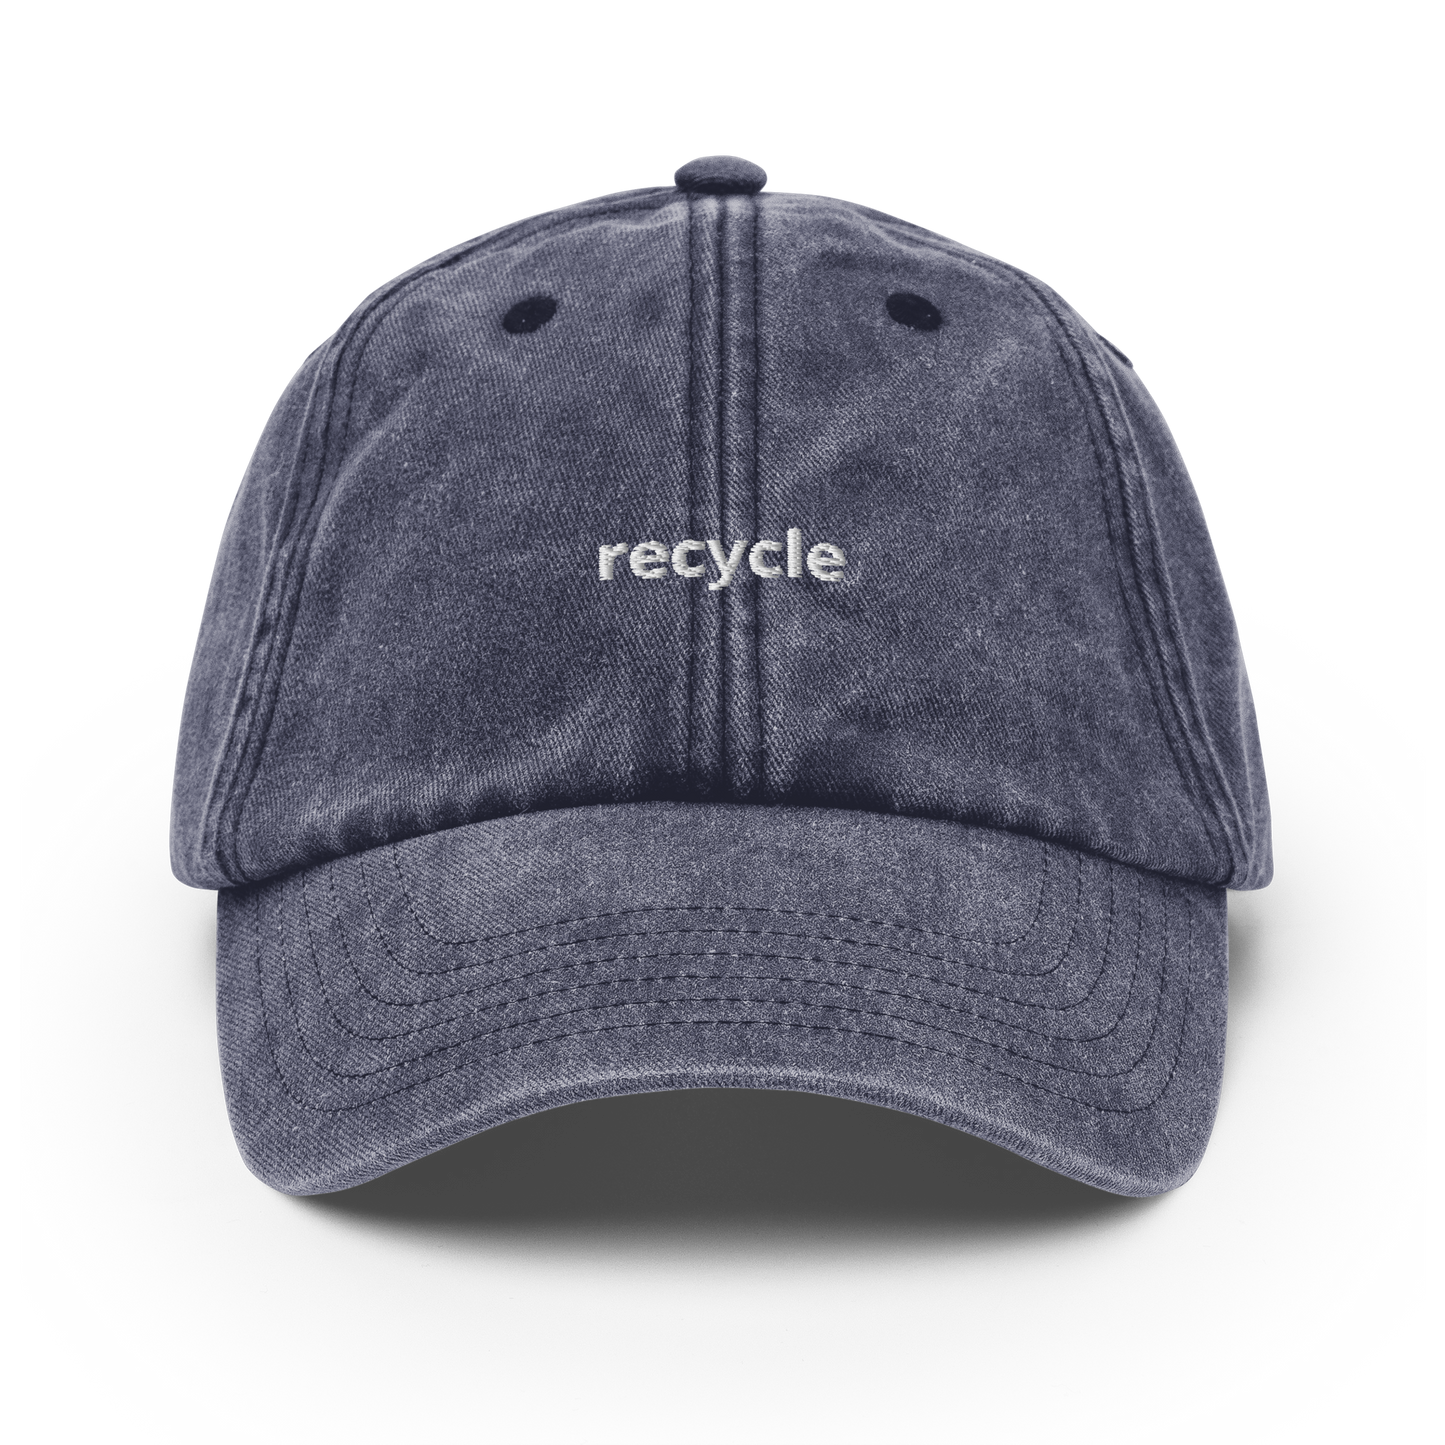 Recycle - Vintage Hat